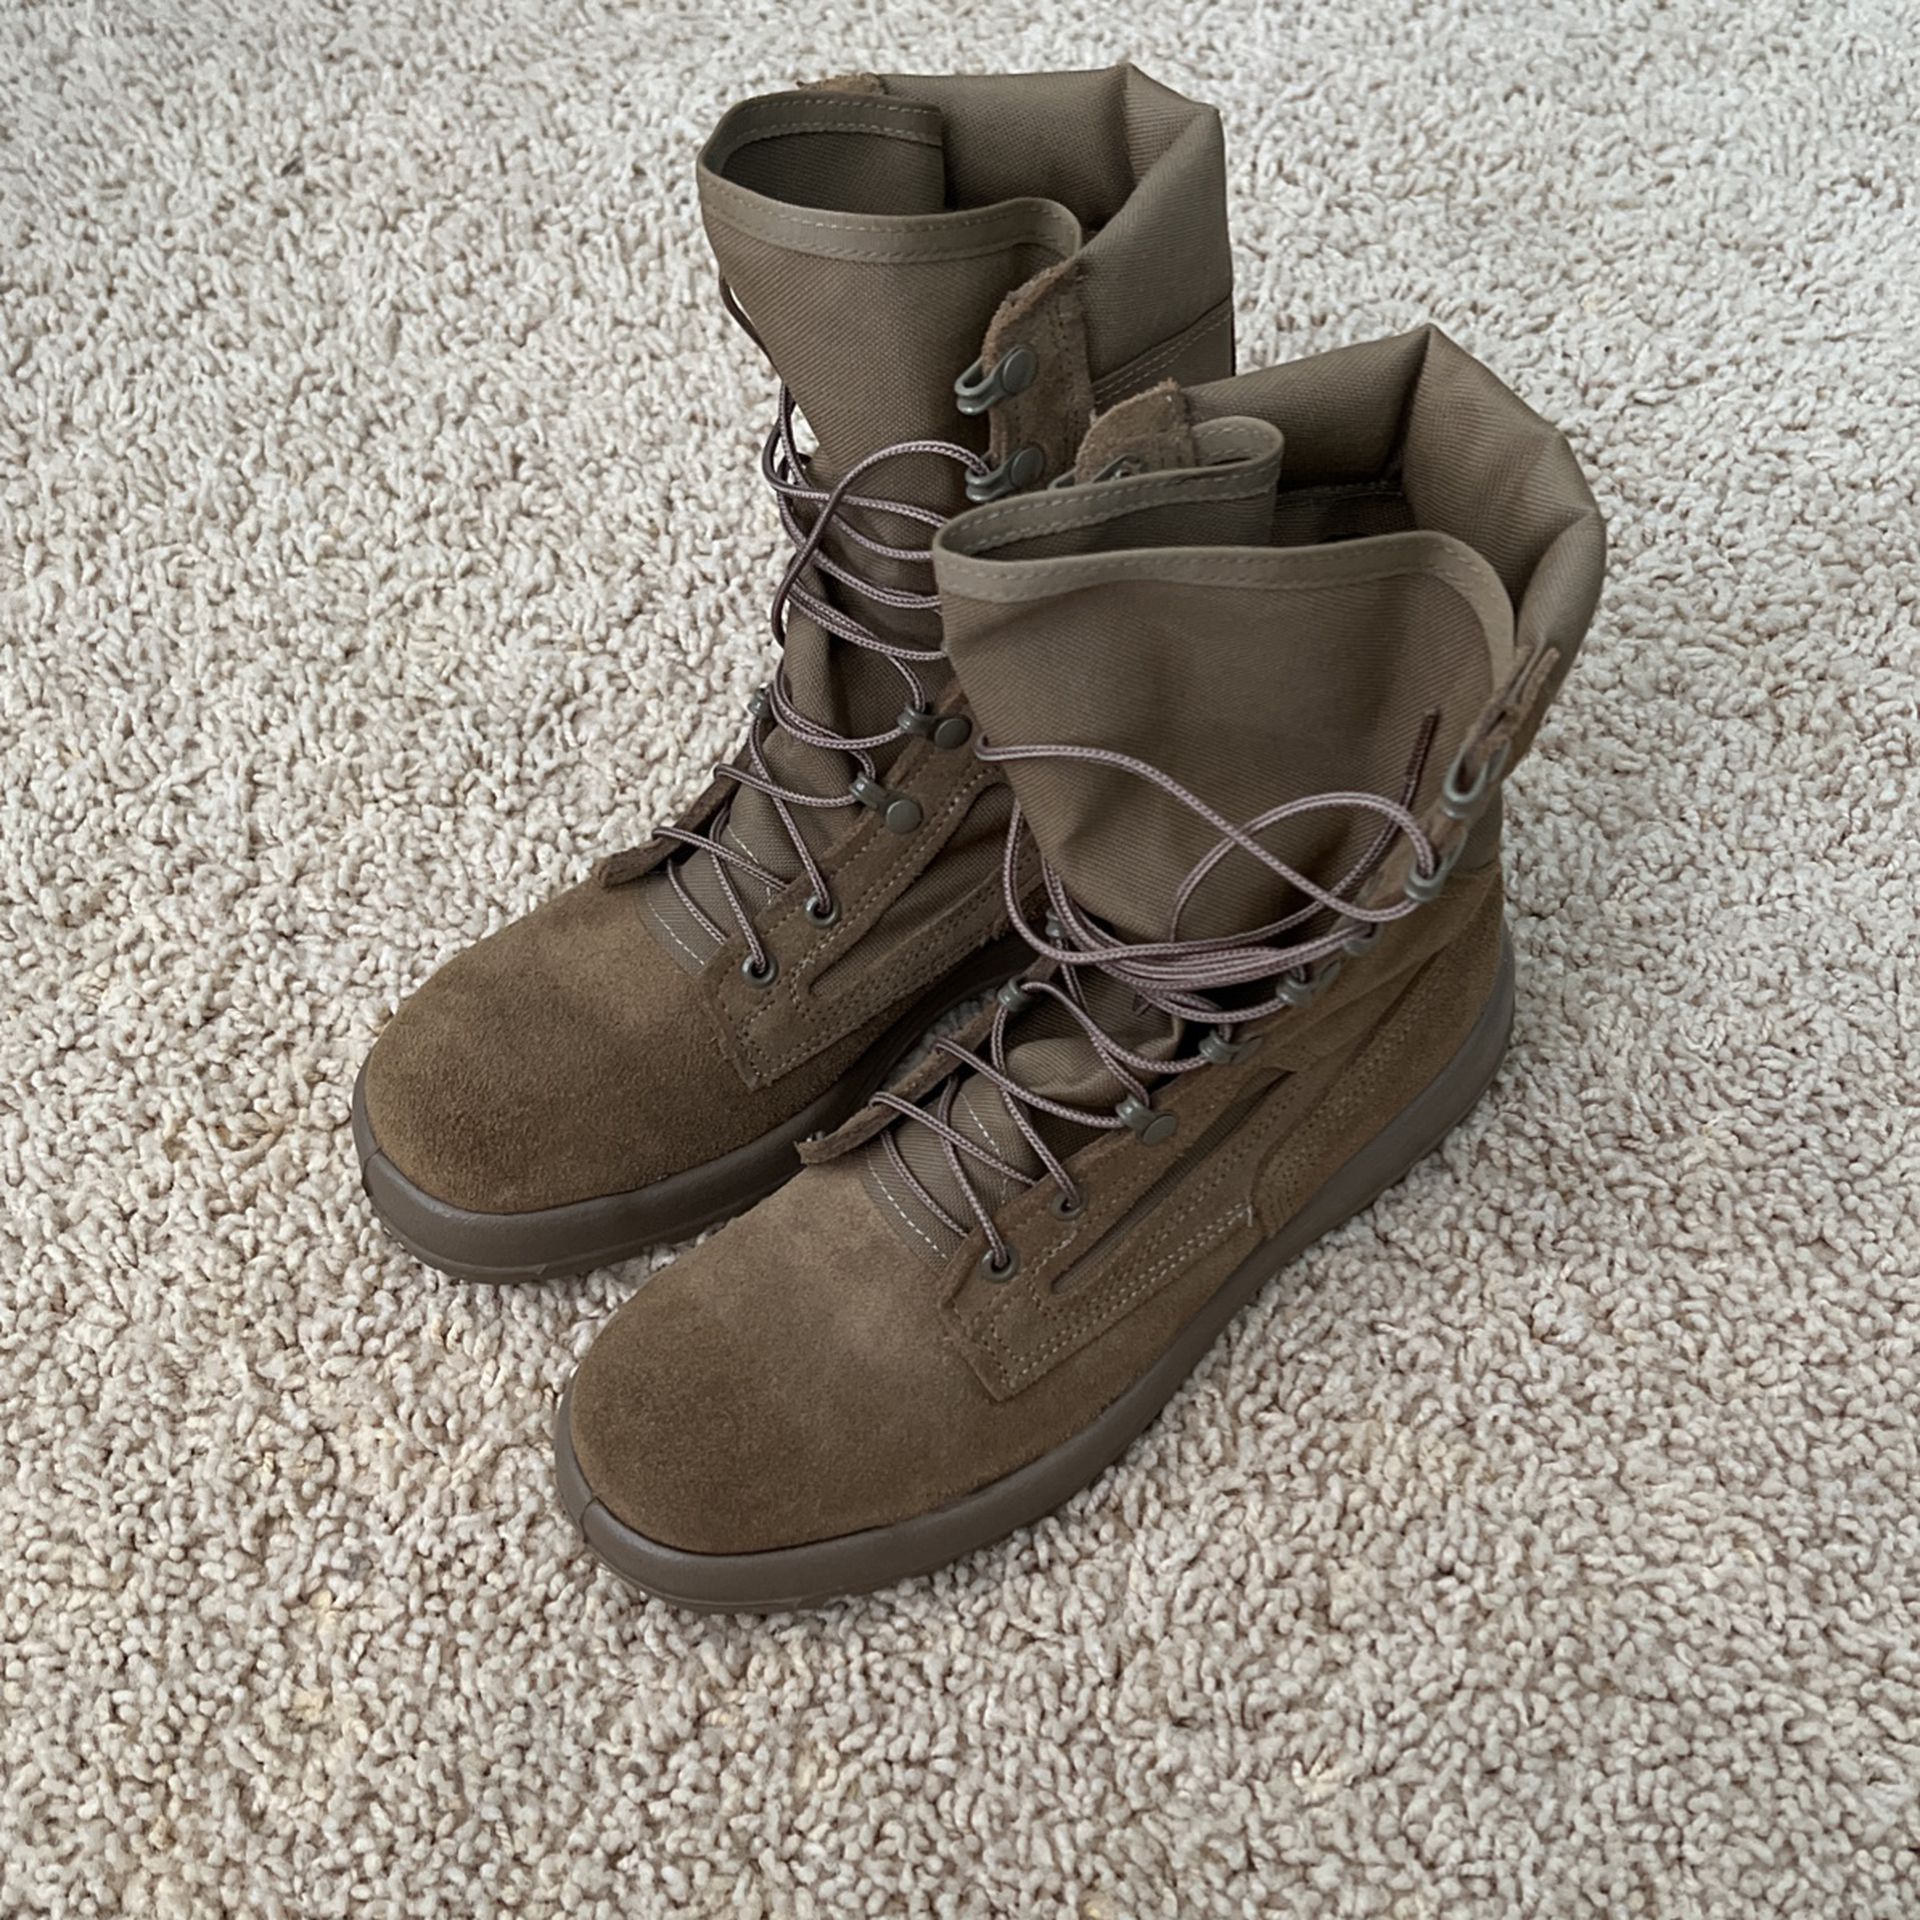 Belleville Combat Boots Size 8.5 Narrow